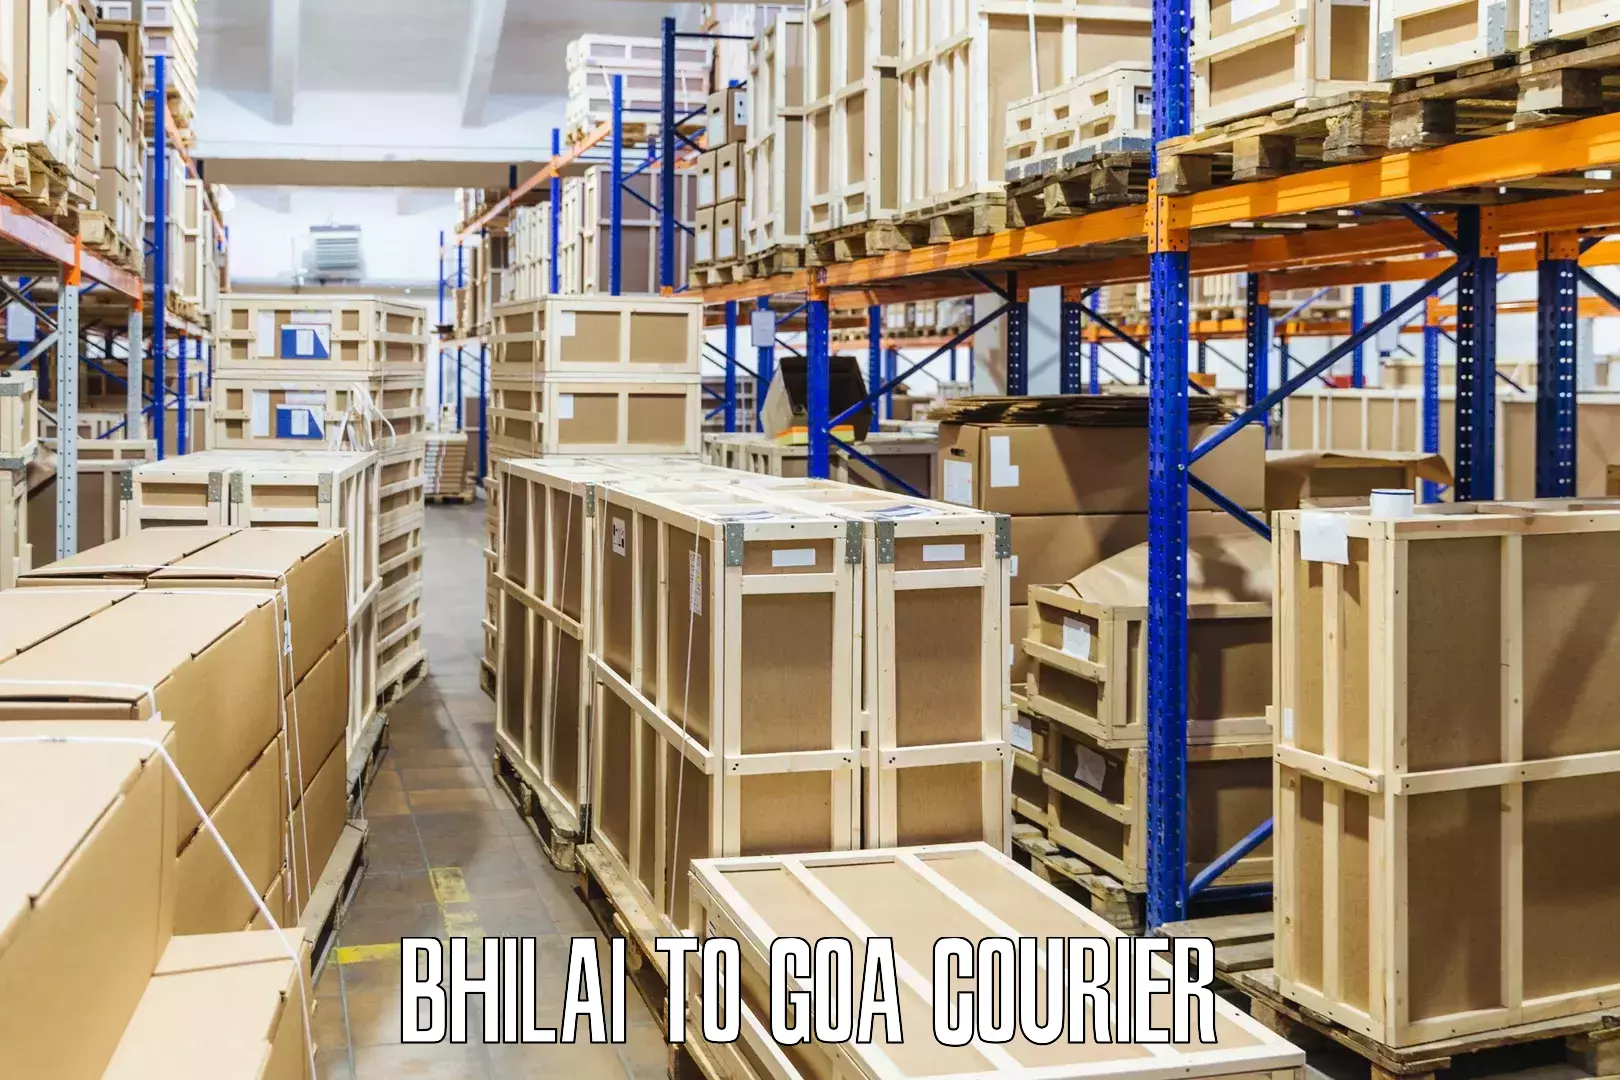 Next-generation courier services Bhilai to Ponda